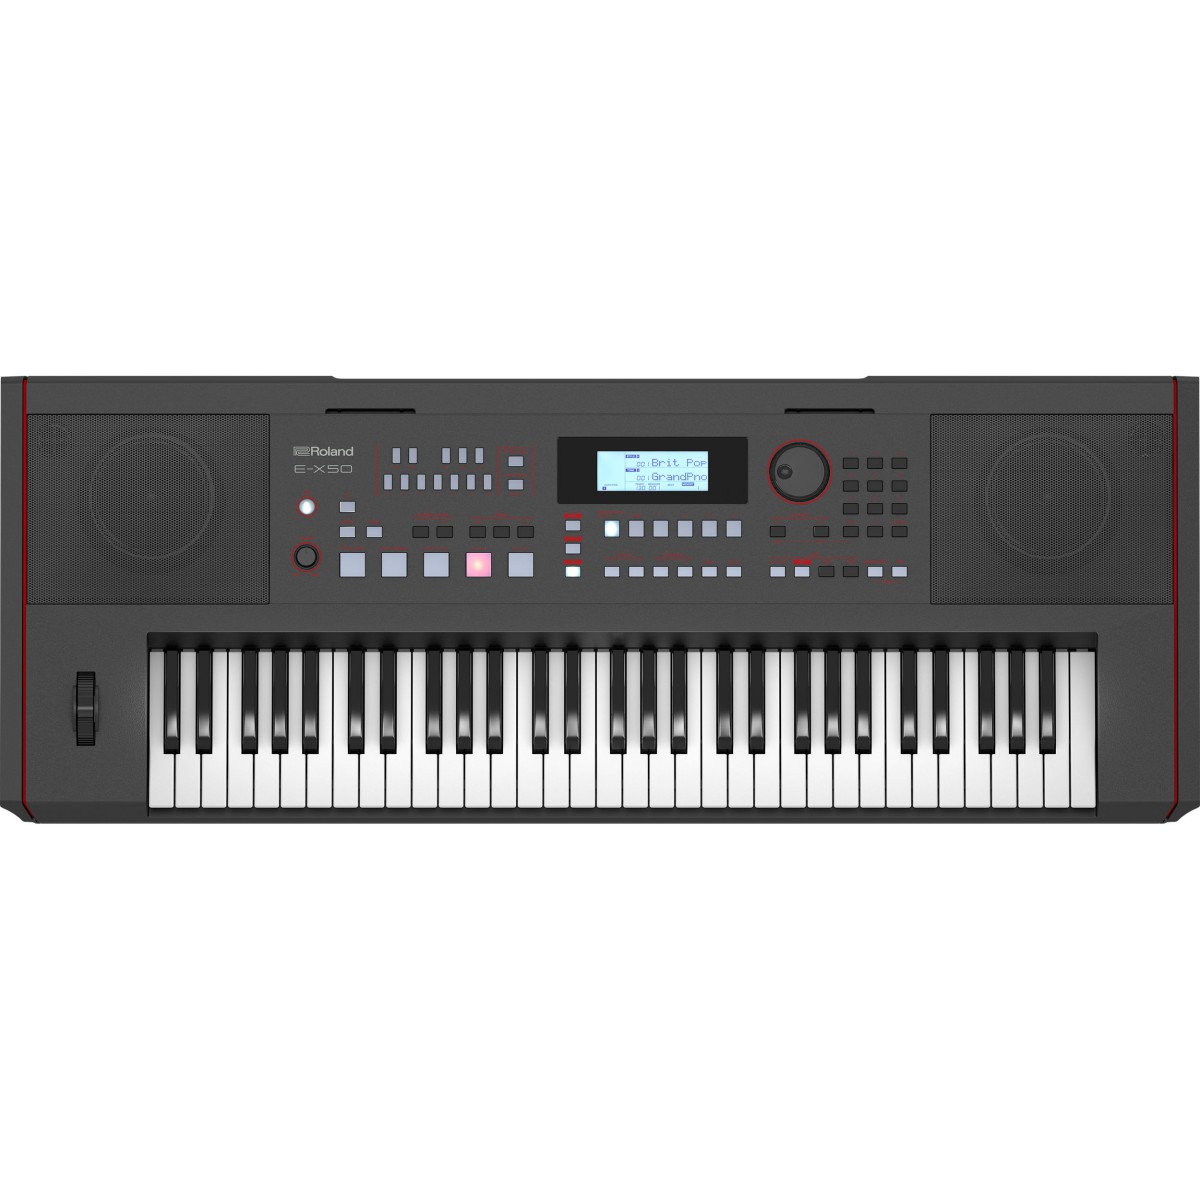 An image of Roland E-X50 Arranger Keyboard  | PMT Online